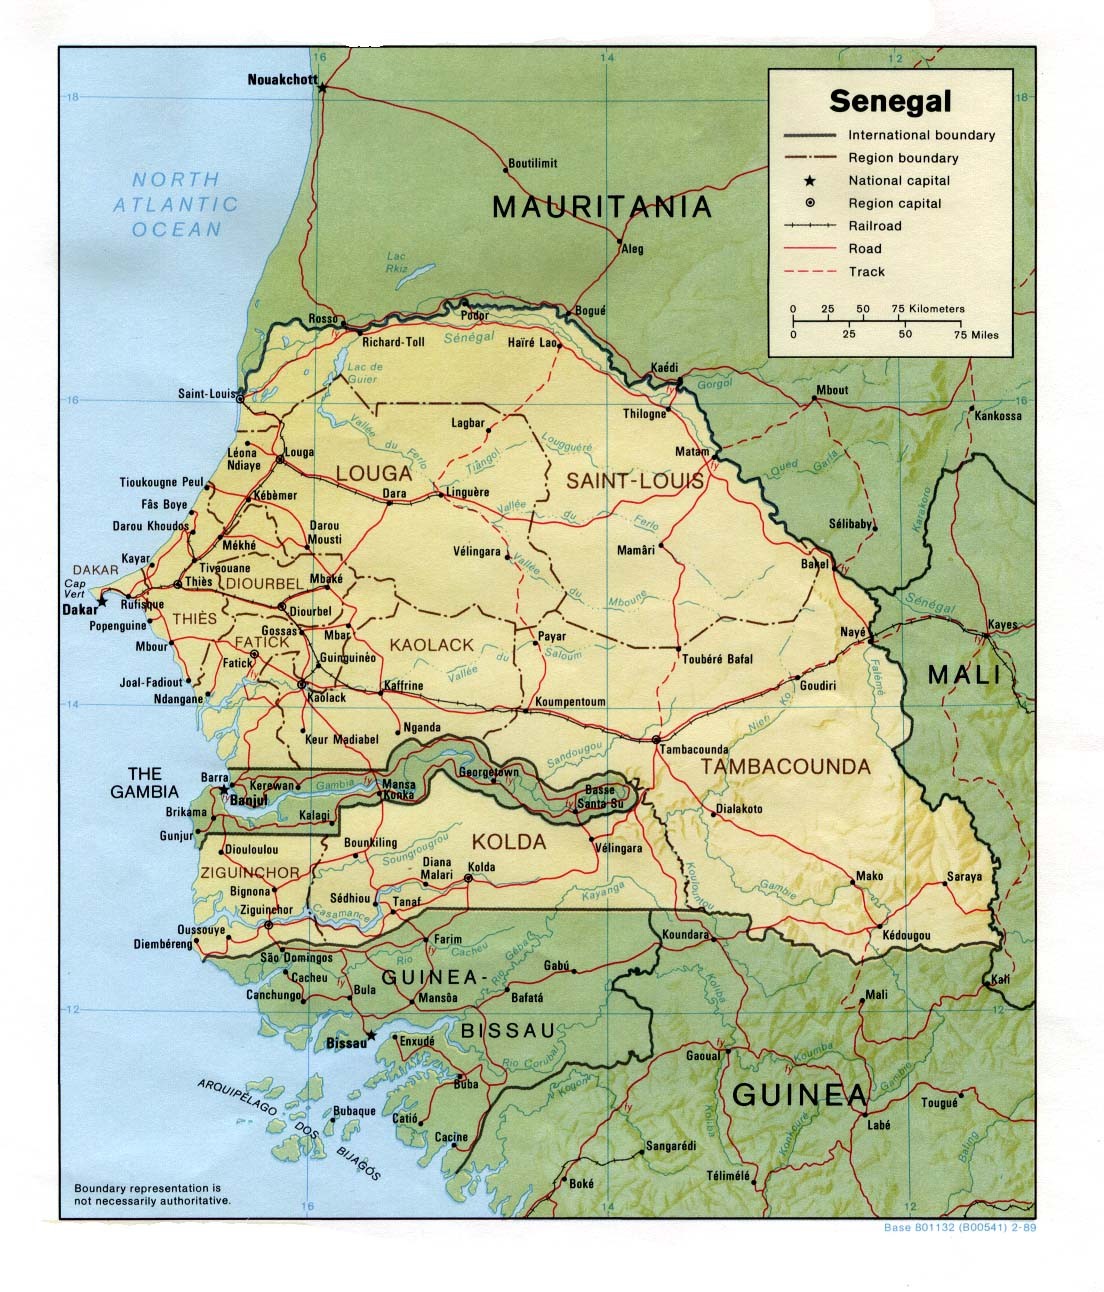 bamba : Senegal - General Information